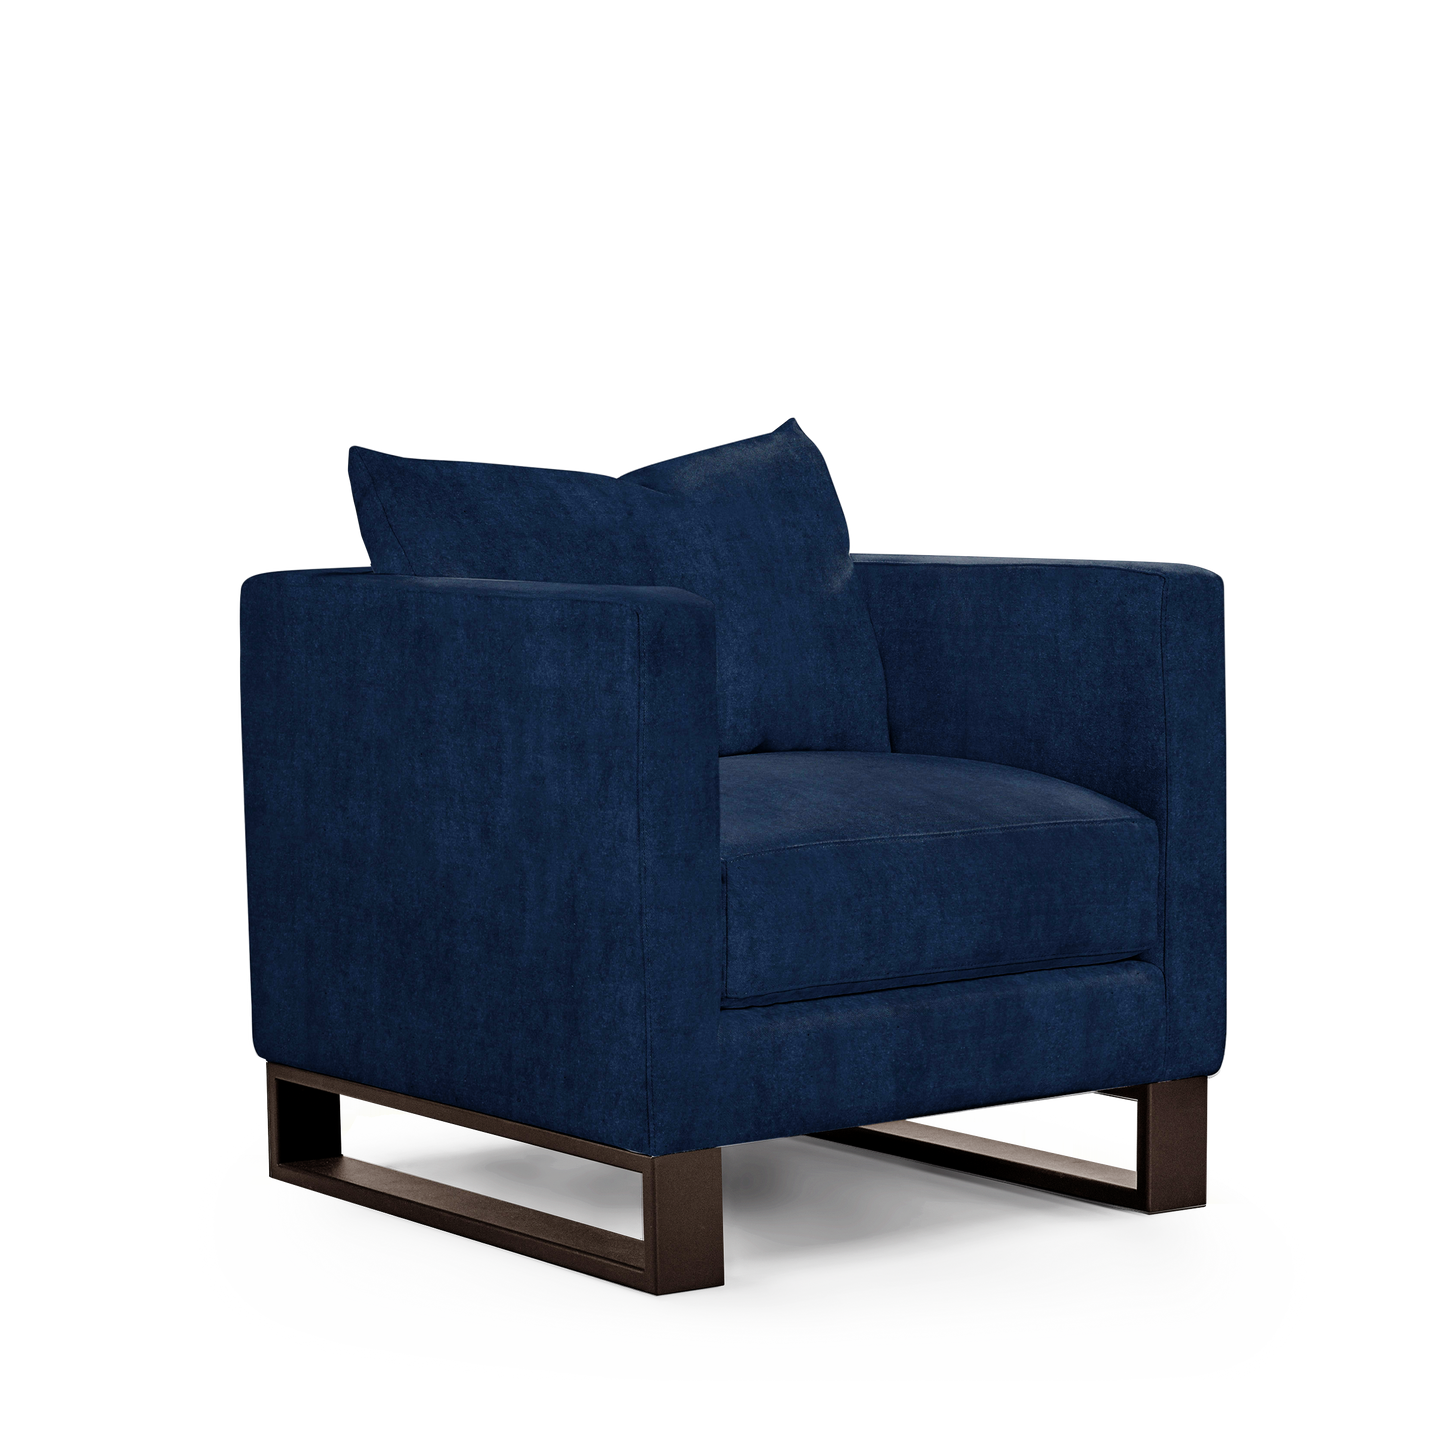 Atlin armchair with London dark blue textile with moka legs 